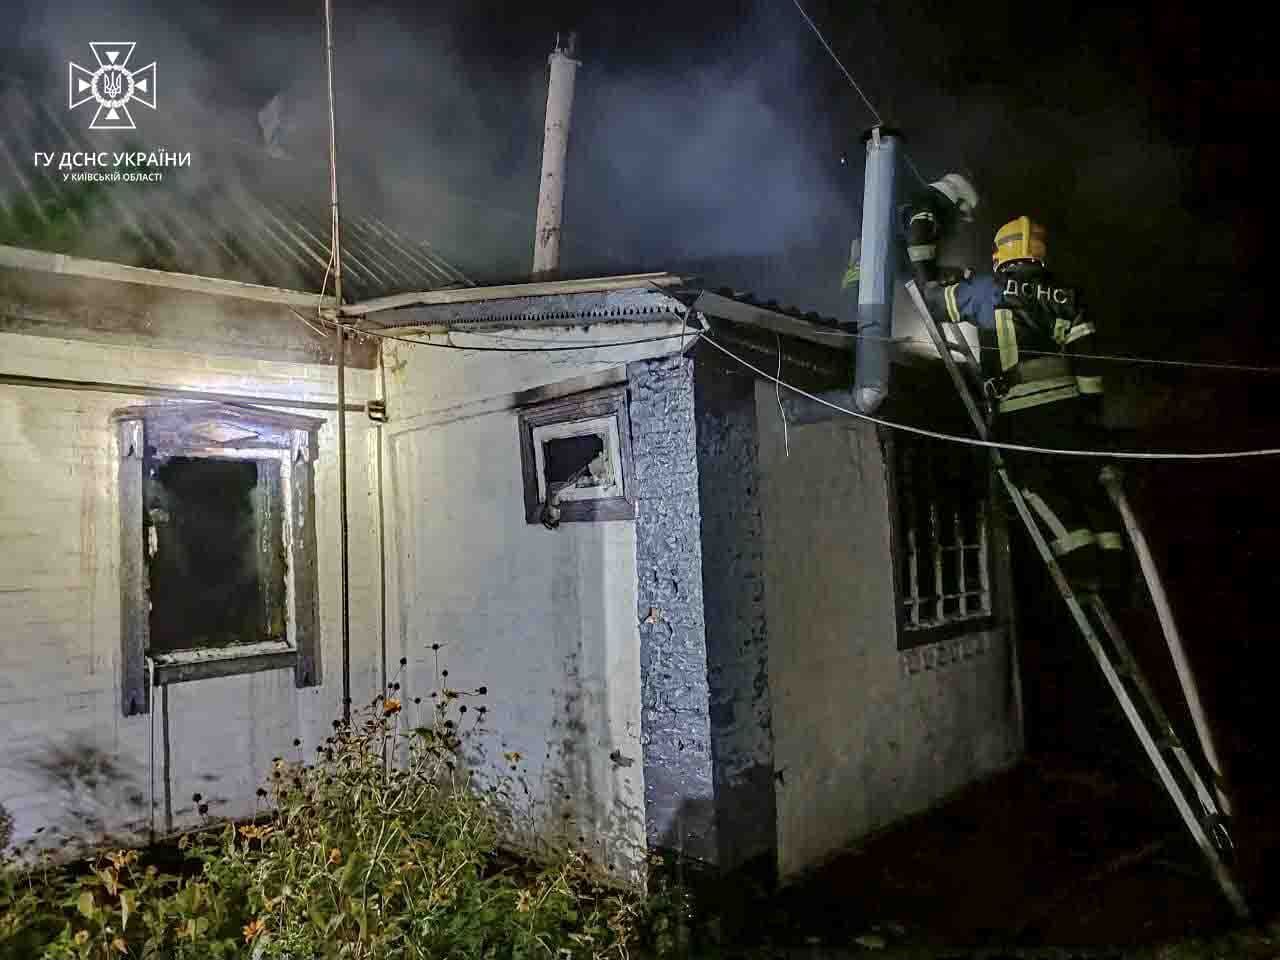 На Київщині під час пожежі загинув чоловік: фото й подробиці трагедії